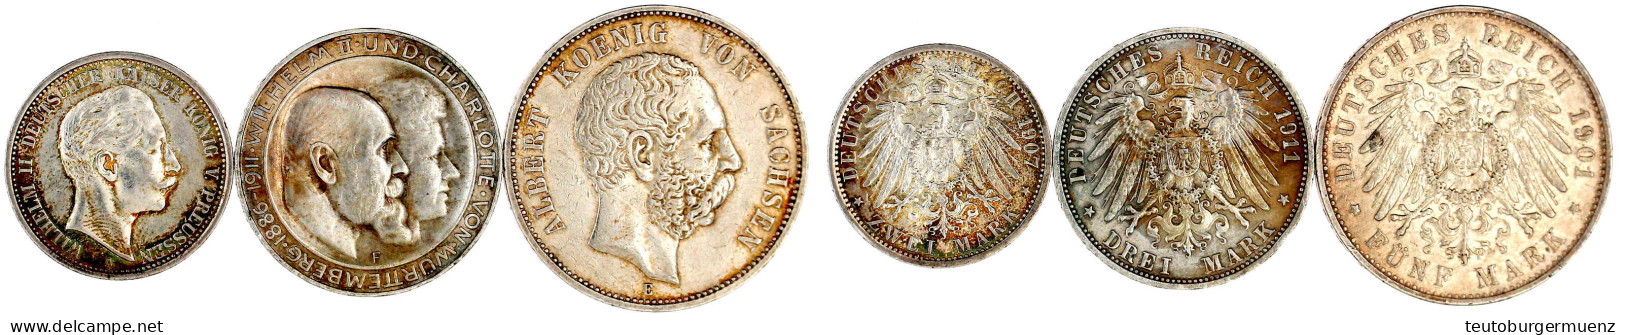 3 Stück: Preussen 2 Mark 1907, Sachsen 5 Mark 1901, Württemberg 3 Mark 1911 Silberhochzeit. Fast Sehr Schön Bis Vorzügli - 2, 3 & 5 Mark Argent